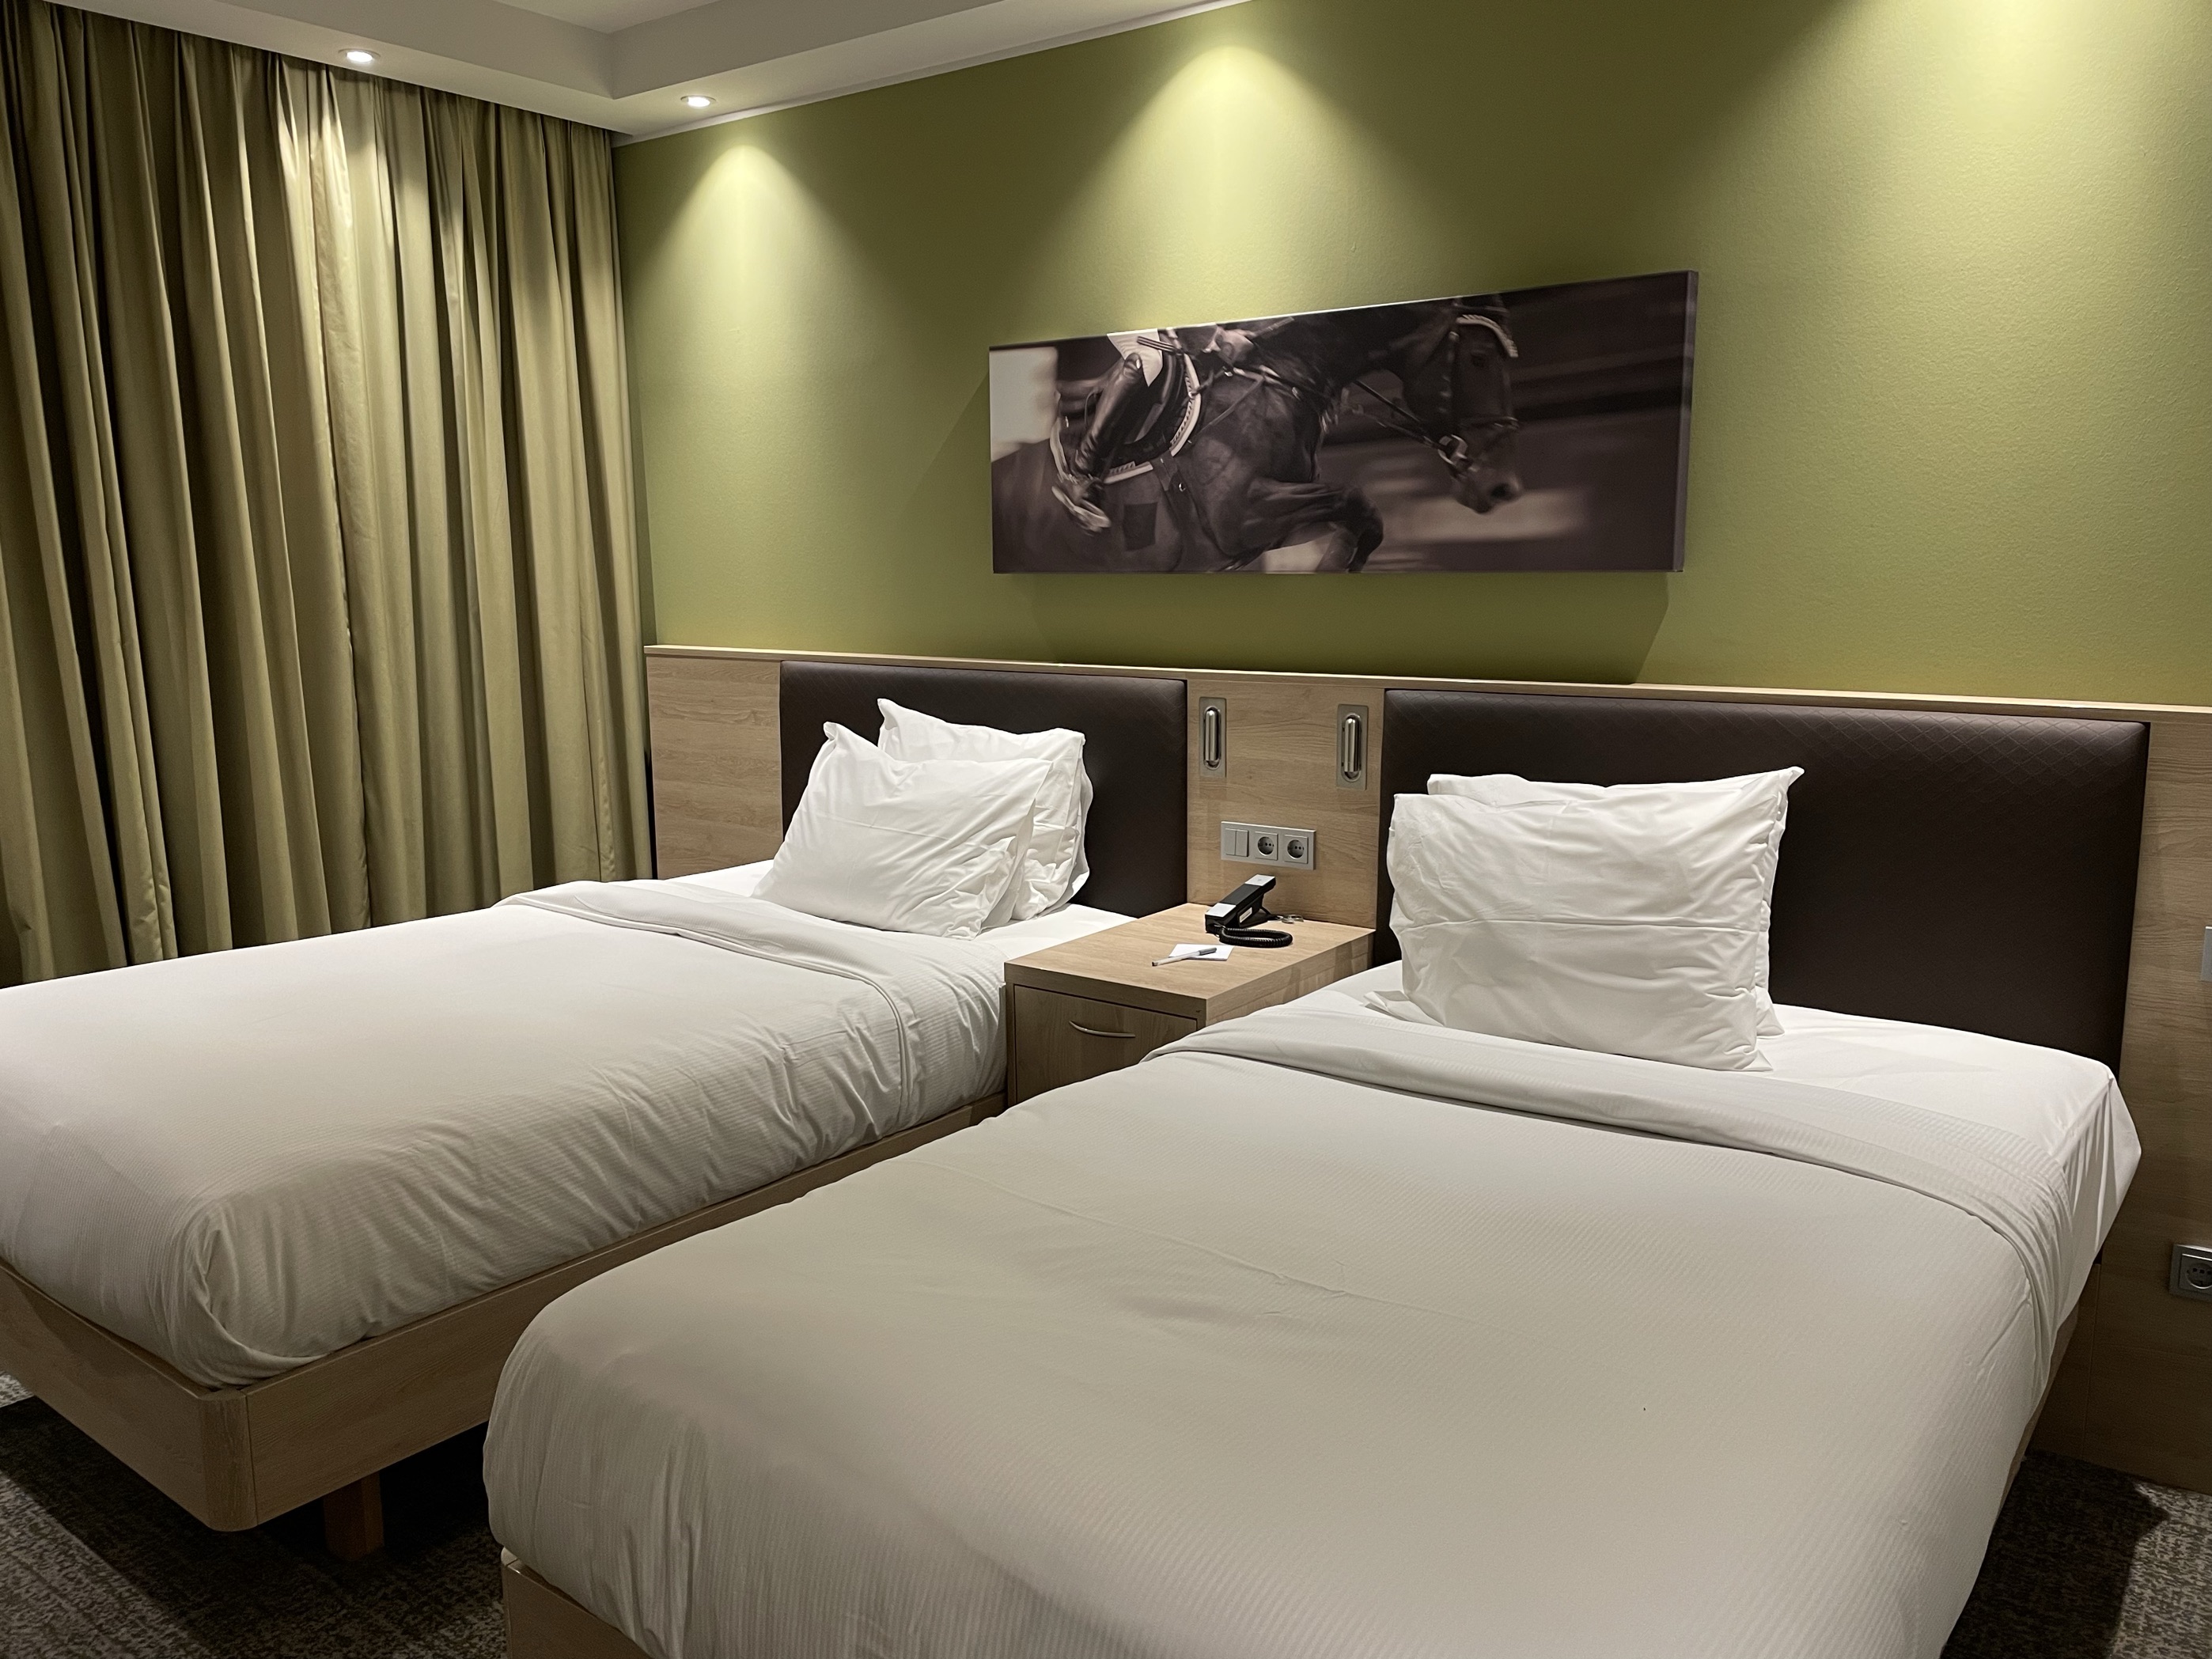 酒店各个方面都可赞：房间面积适中、房间干净整洁舒适，单床面积也很大，床垫特别舒服，感觉休息的特别好。